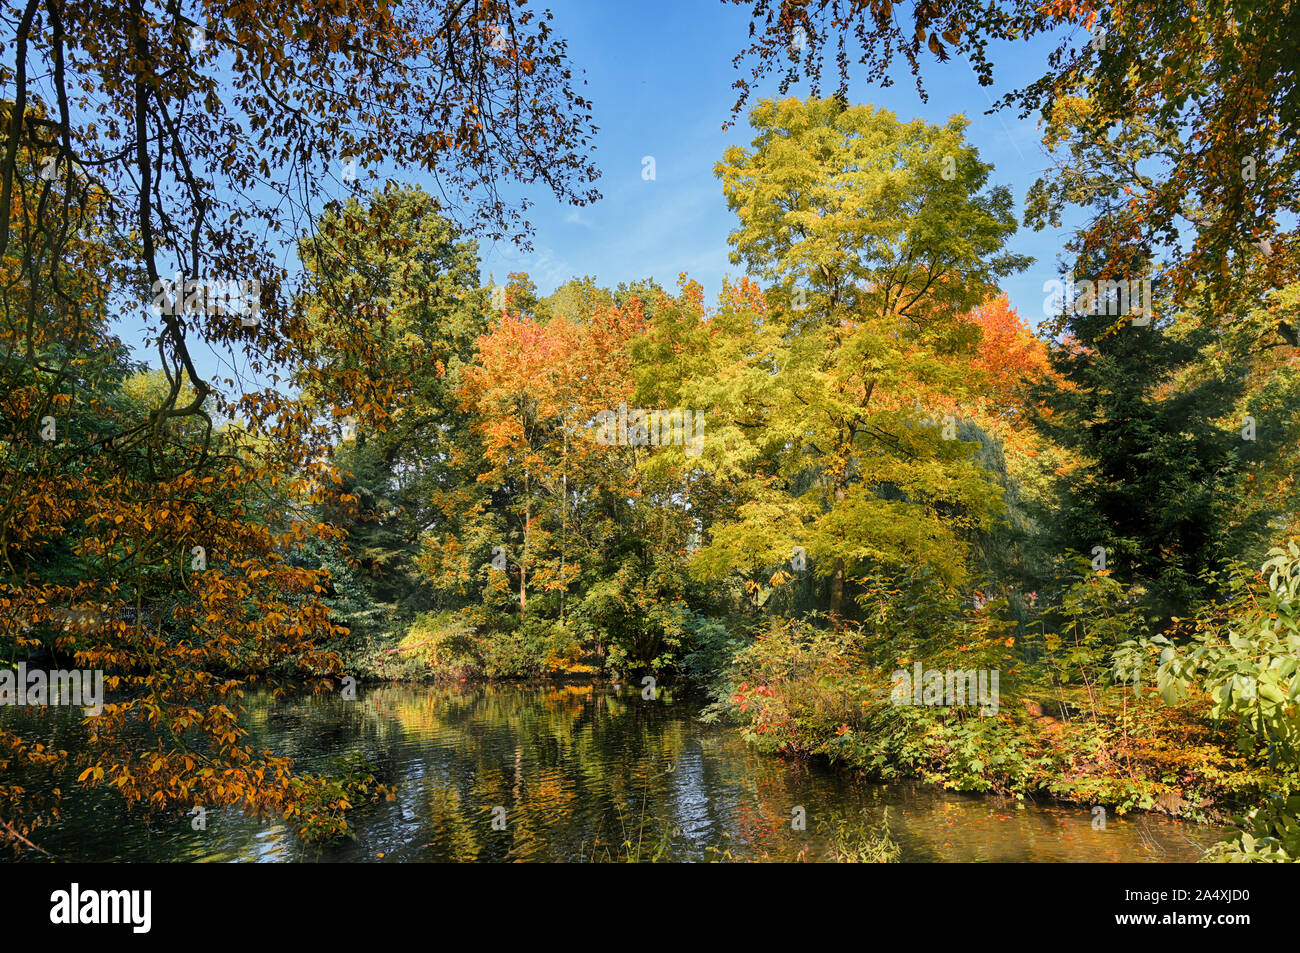 Autunno bello e mite di alberi con foglie colorate sulle sponde di un lago in un parco antico, natura stagionale con uno sfondo con cielo blu Foto Stock